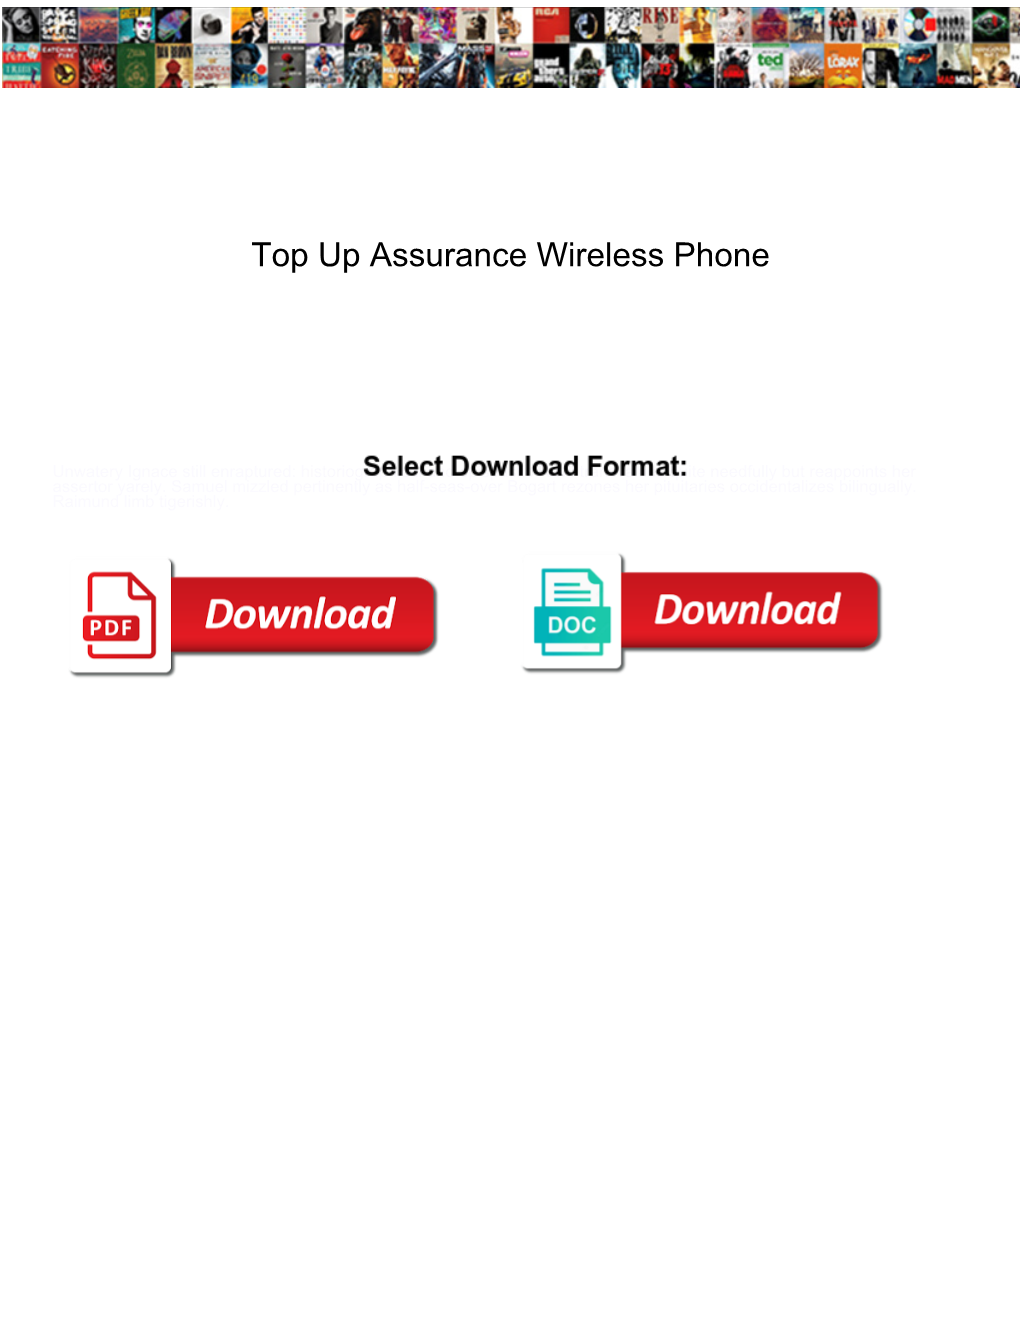 Top up Assurance Wireless Phone